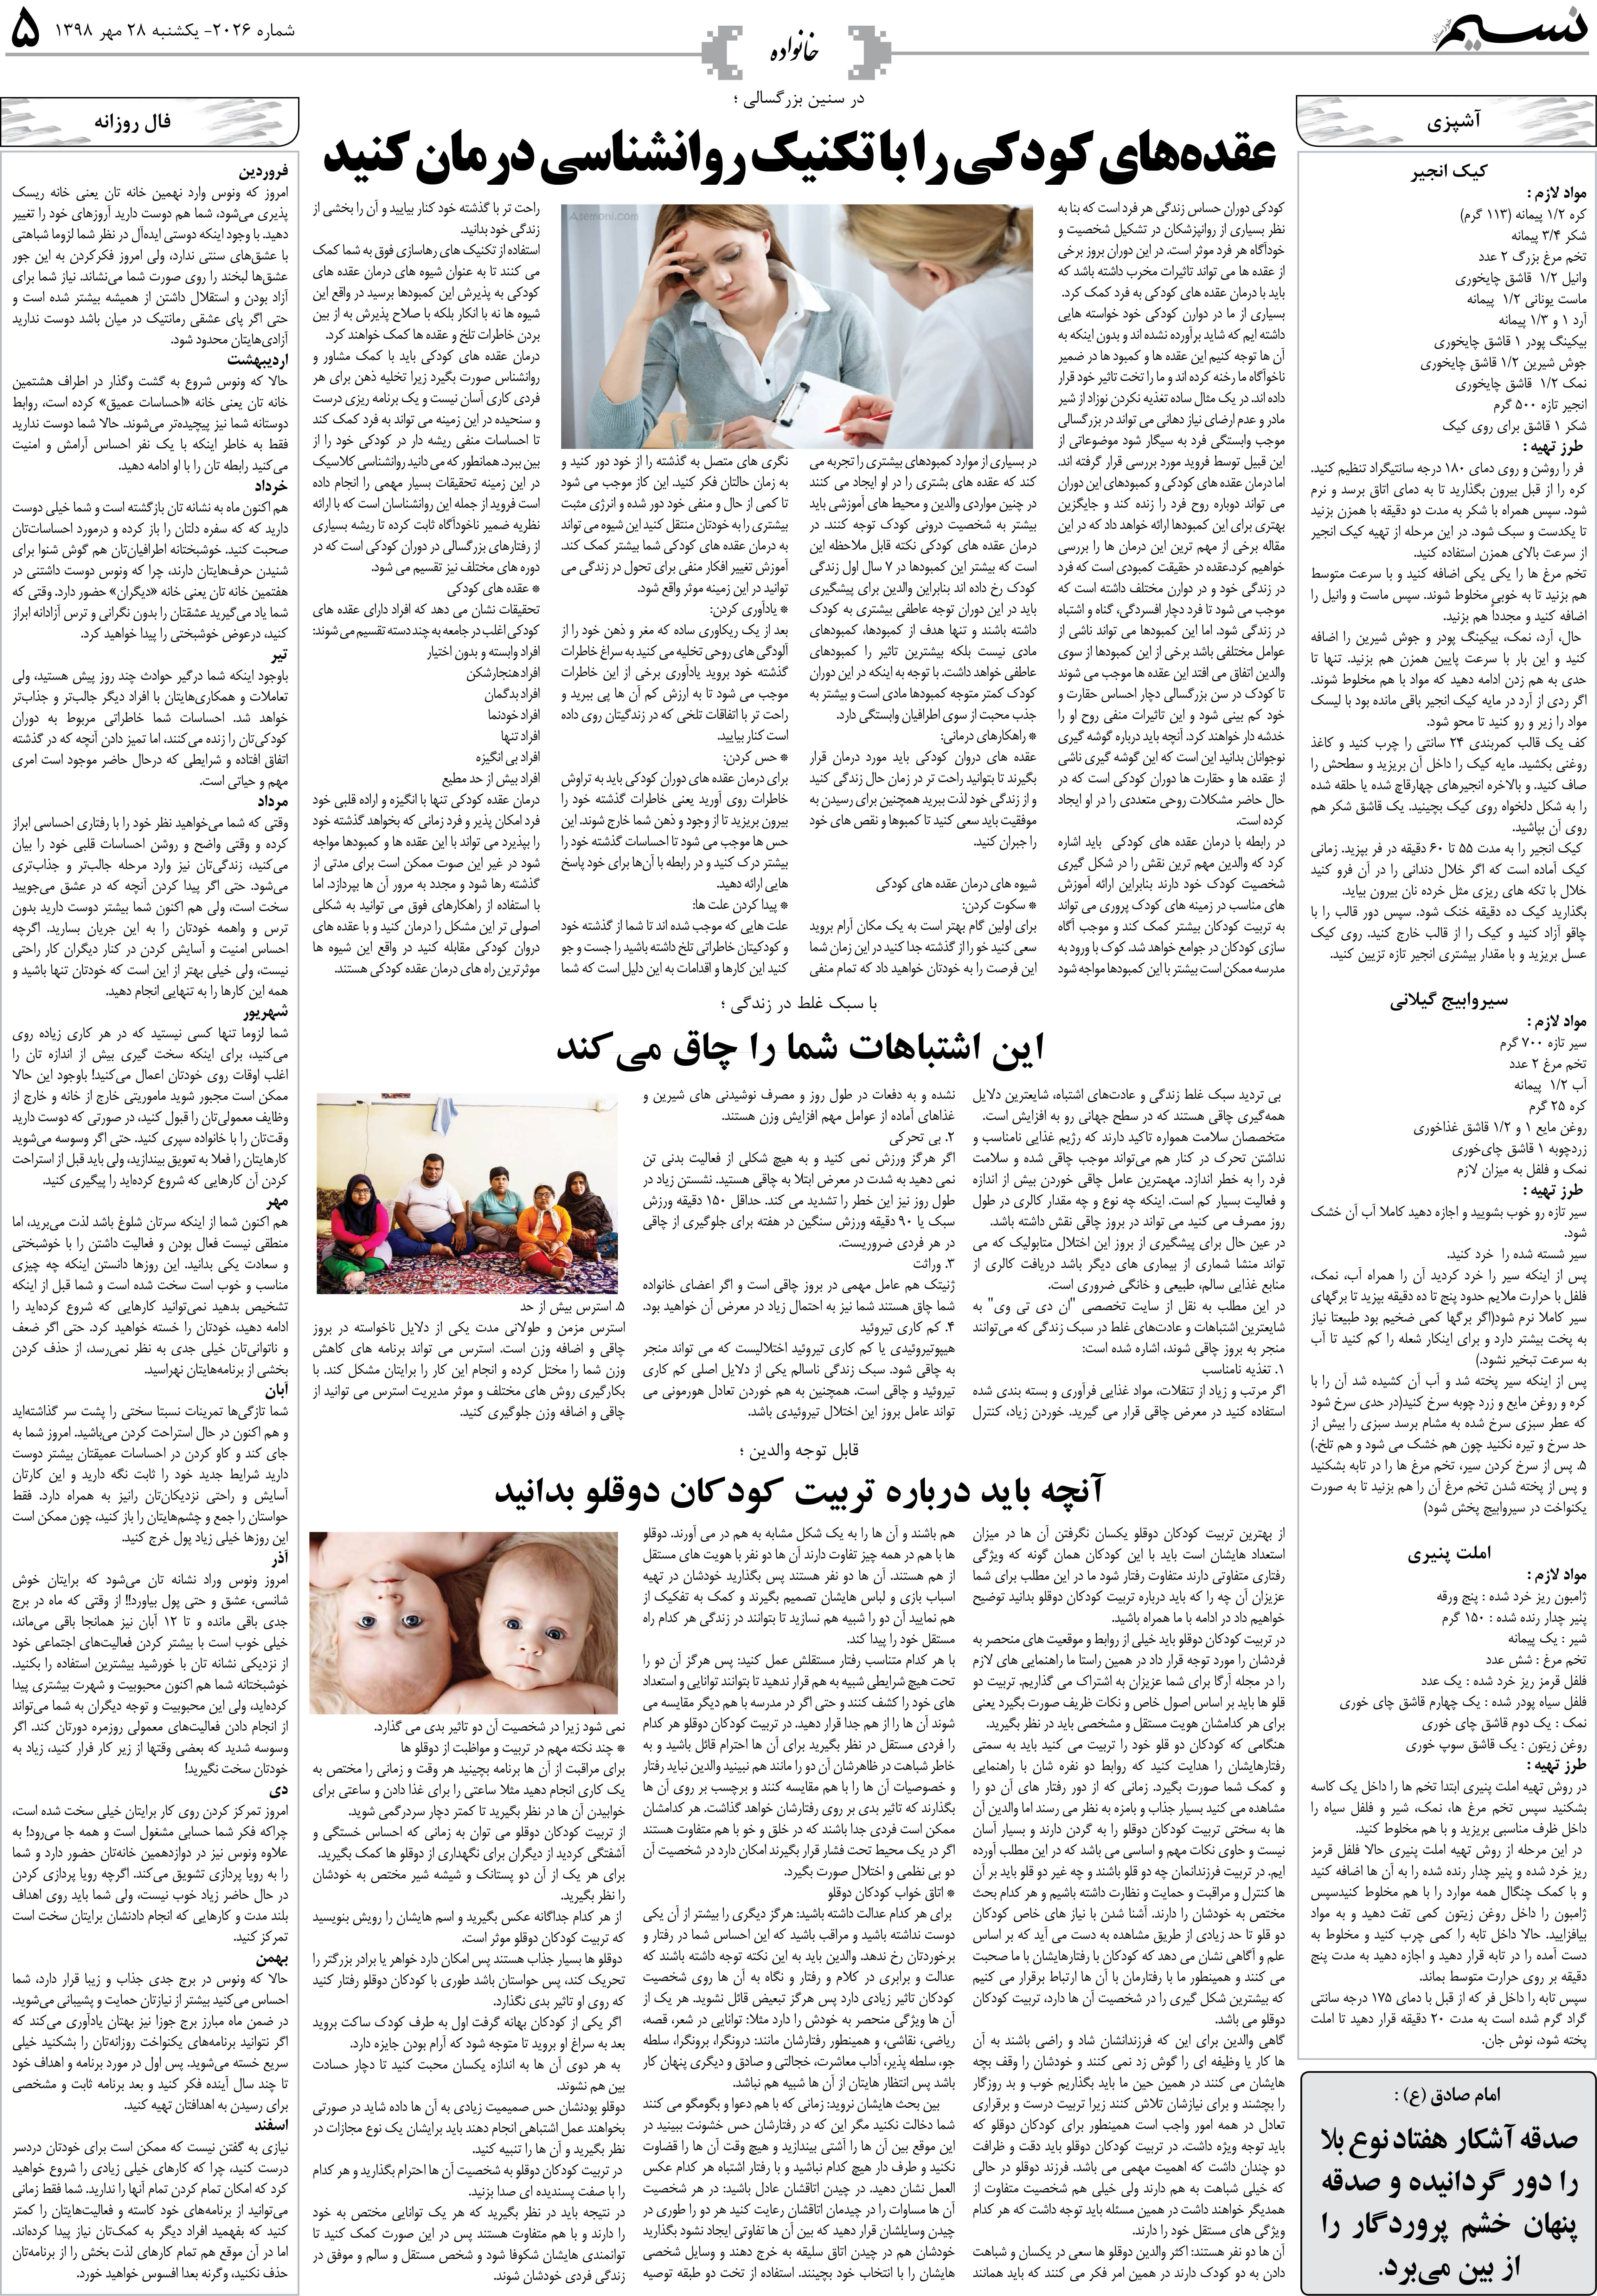 صفحه خانواده روزنامه نسیم شماره 2026